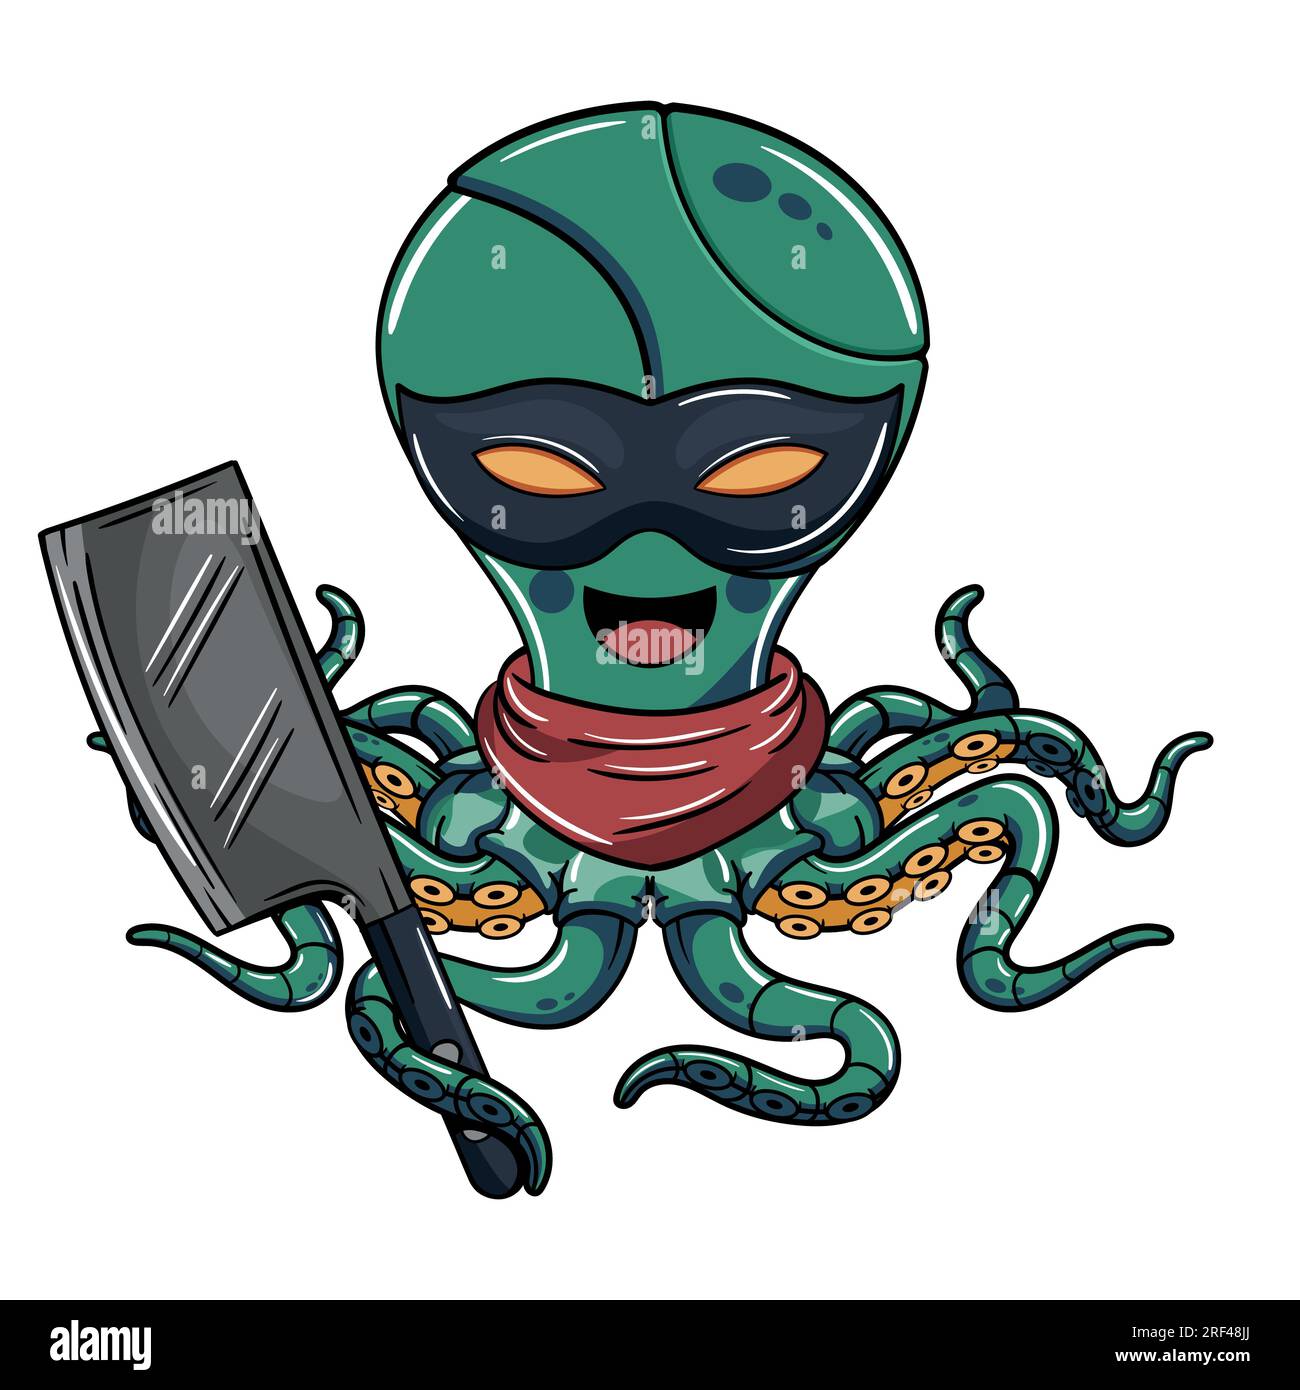 Cartoon böswilliger militärischer Cyborg Krake Charakter trägt eine Augenmaske mit einem Fleischmesser in der Hand. Illustration für Fantasie, Science-Fiction und Adventure CO Stock Vektor